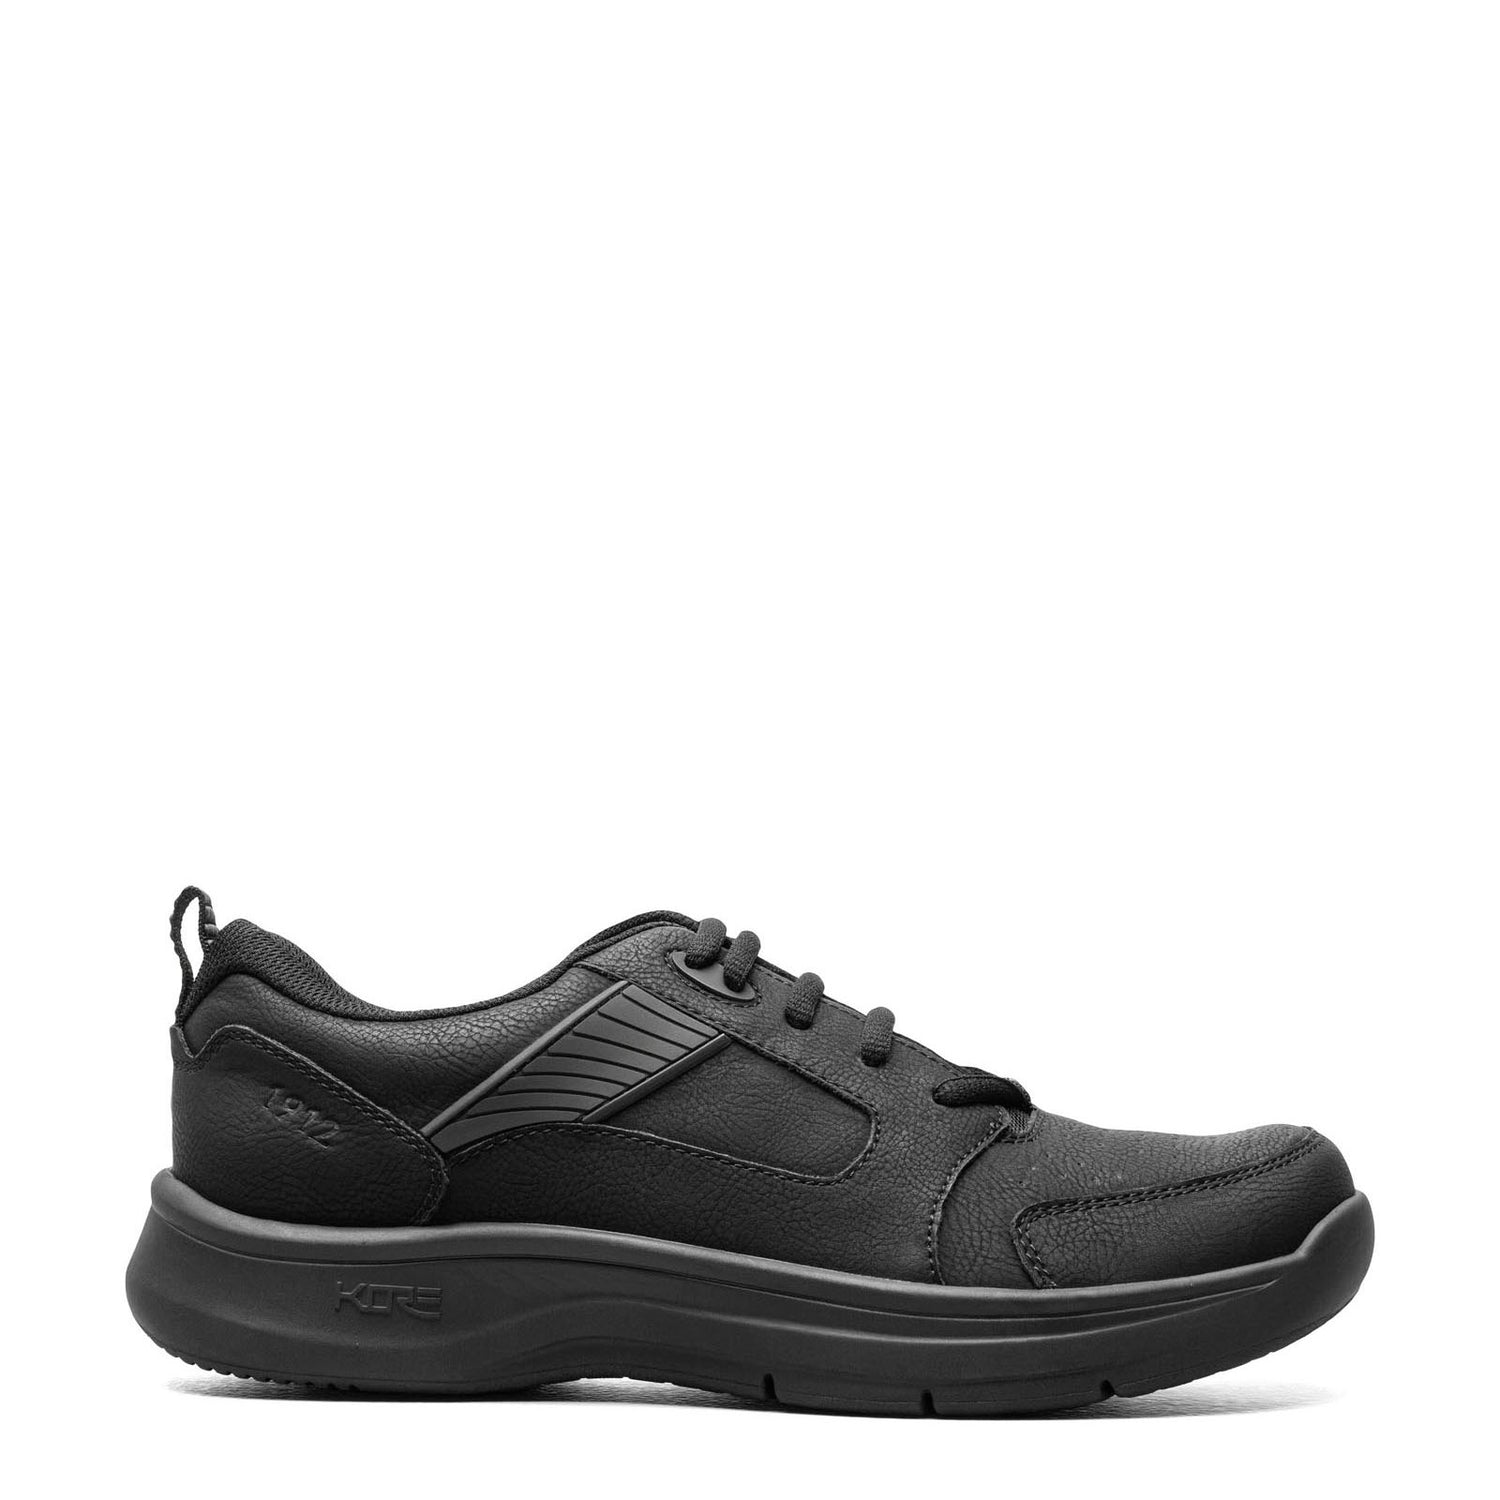 Peltz Shoes  Men's Nunn Bush KORE Elevate Moc Toe Oxford BLACK 85017-001